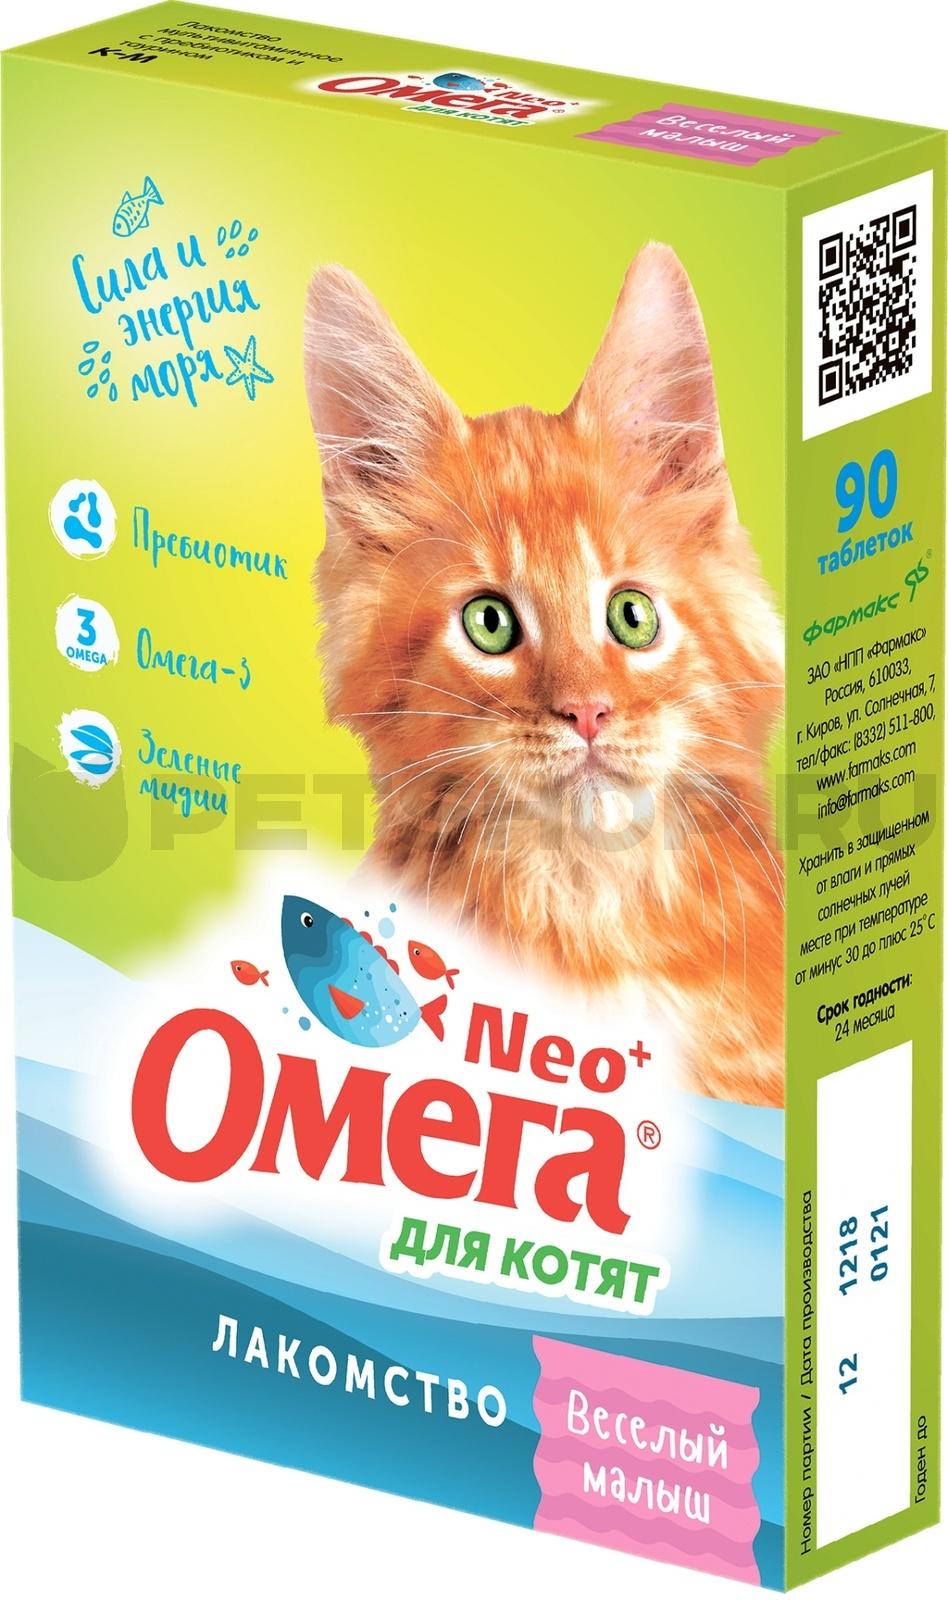  ОМЕГА NEO+ Витамины Веселый Малыш для котят 60шт фото, цены, купить